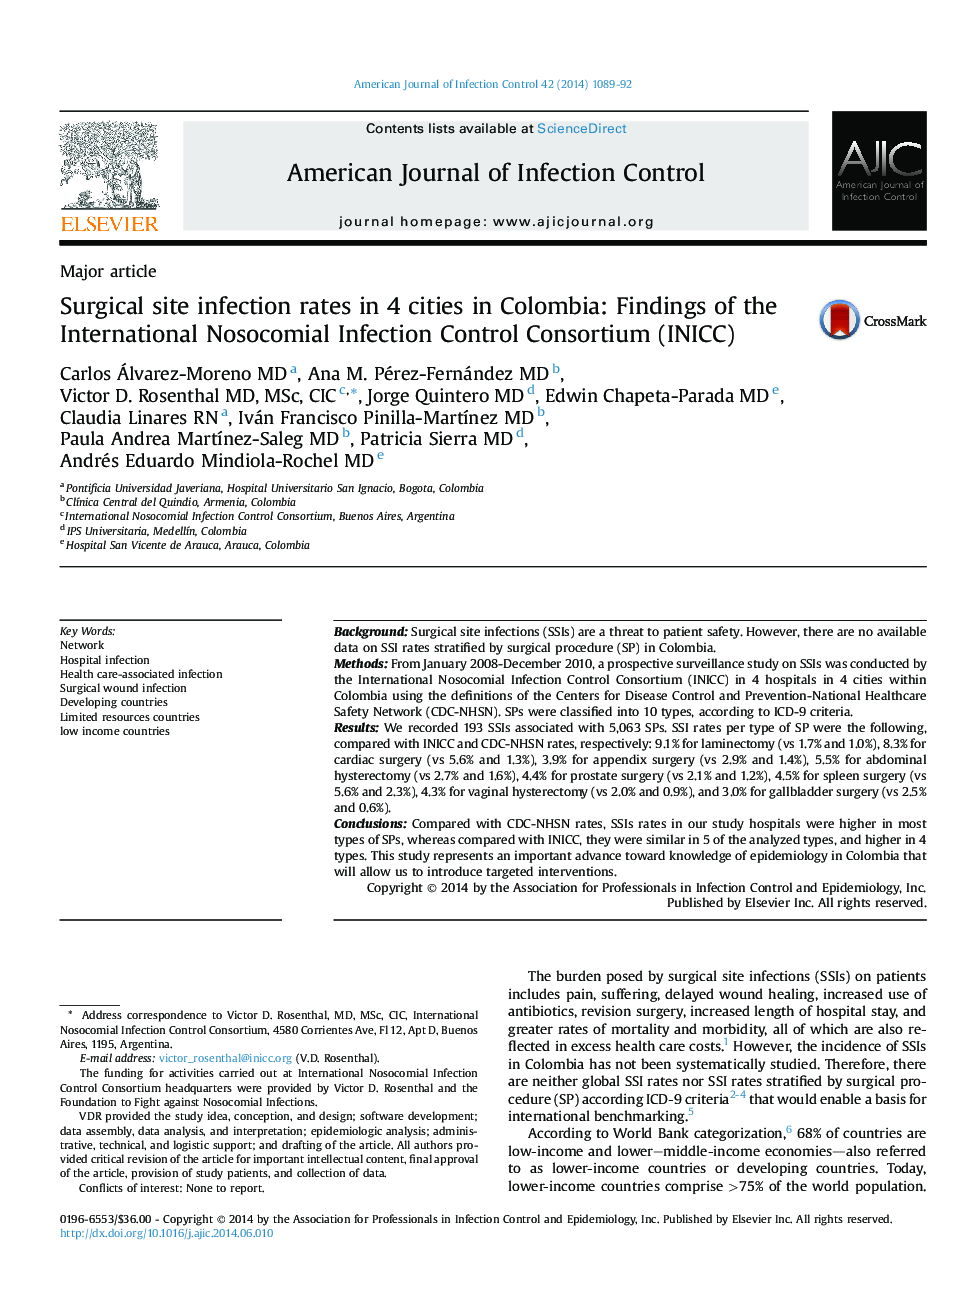 میزان آلودگی به جراحی در 4 شهر کلمبیا: یافته های کنسرسیوم کنترل عفونت بین المللی بیمارستانی (INICC)